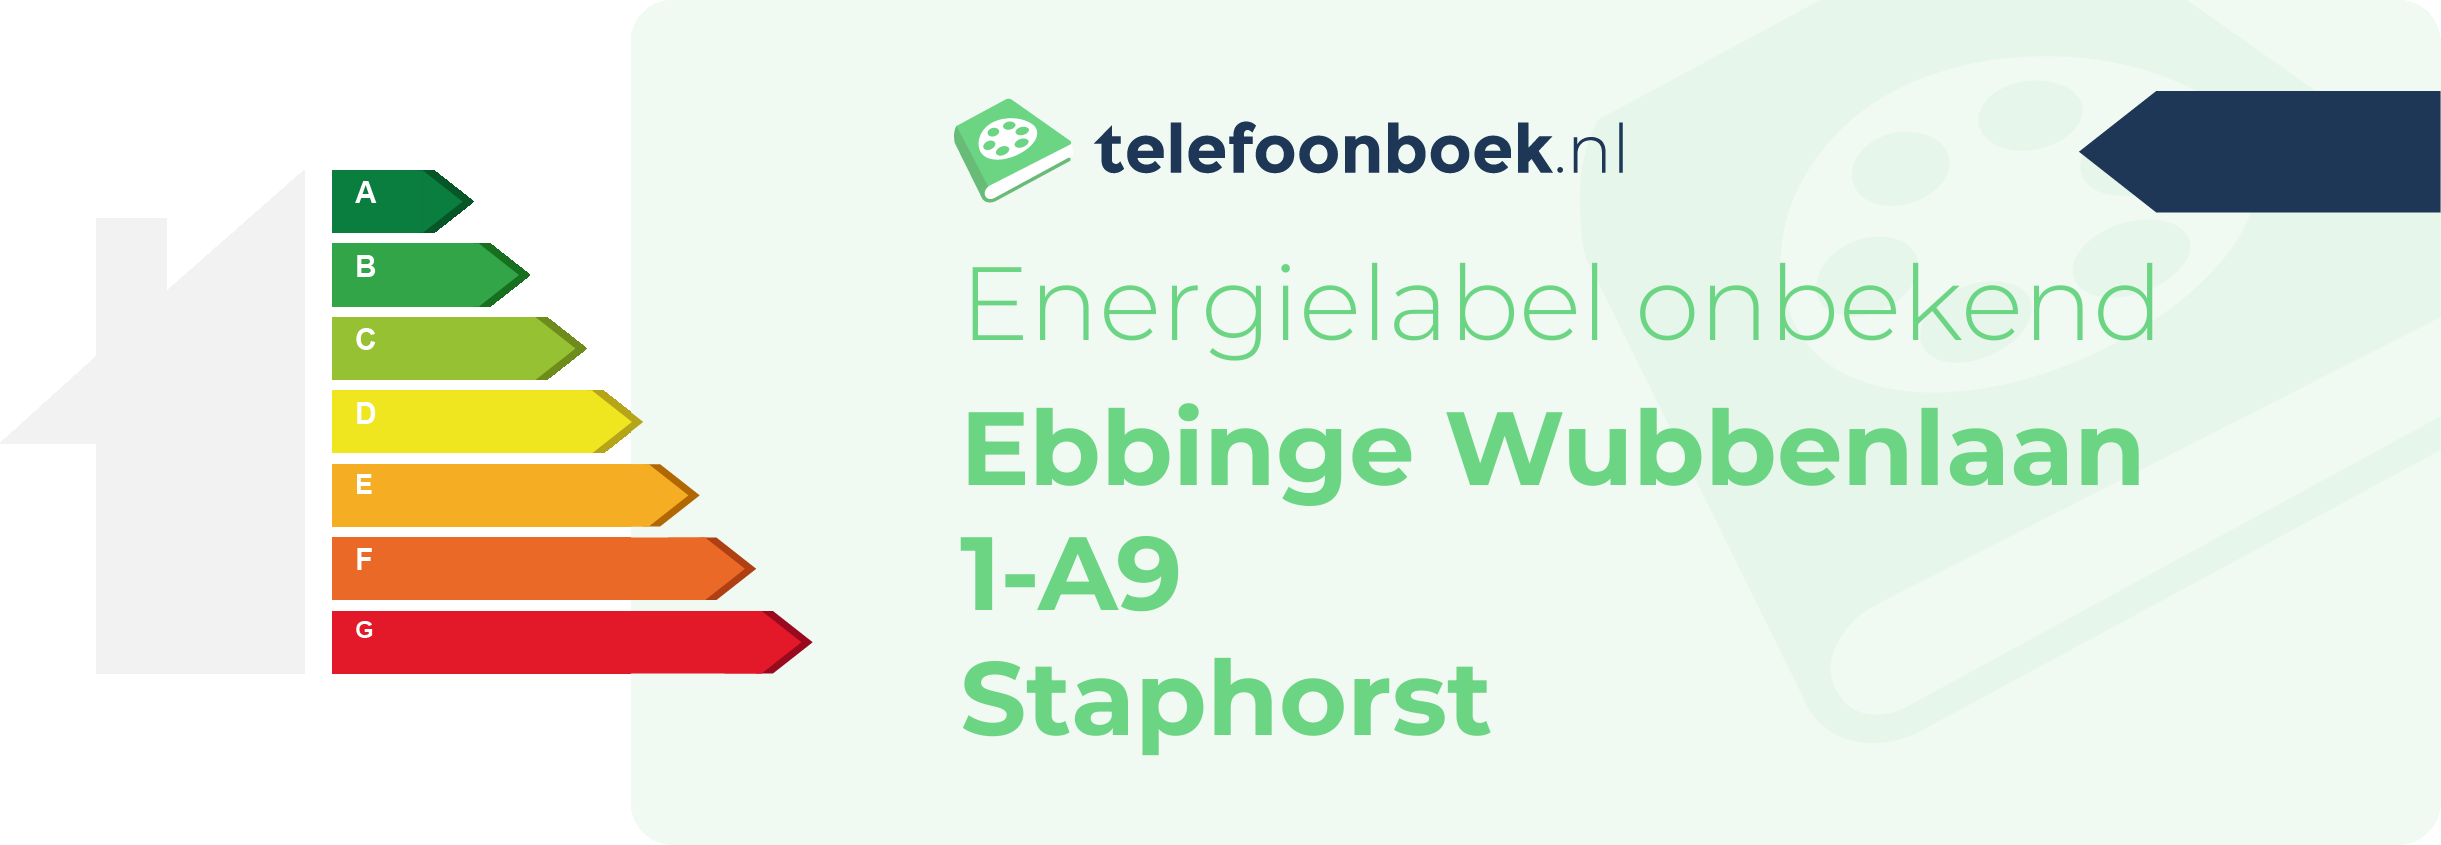 Energielabel Ebbinge Wubbenlaan 1-A9 Staphorst